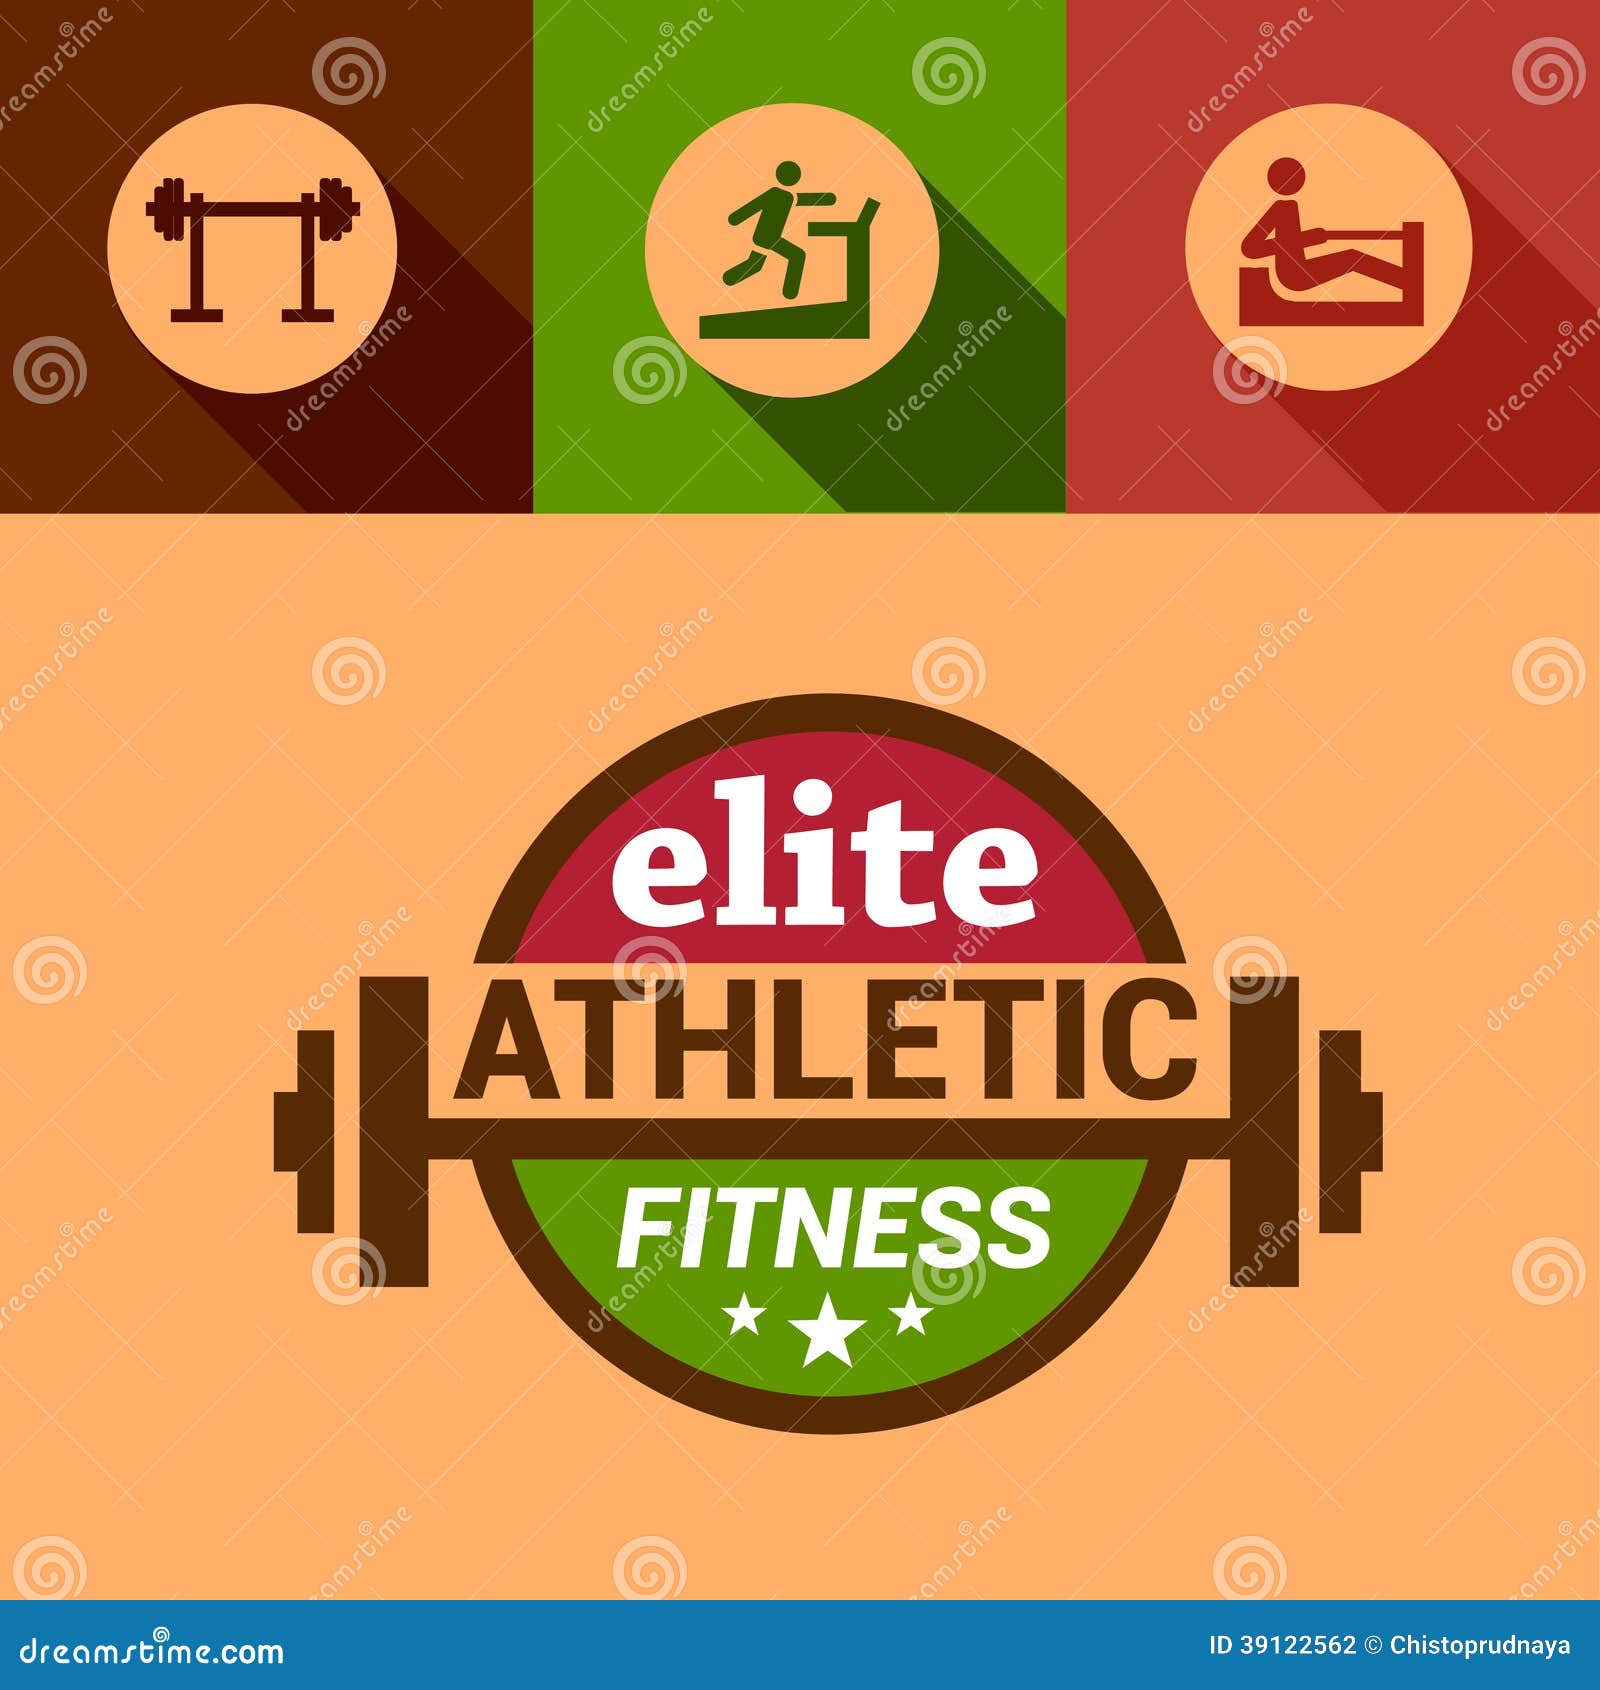 Elite Fitness Center - Emblem Or Logo With Original Lettering. Vector ...